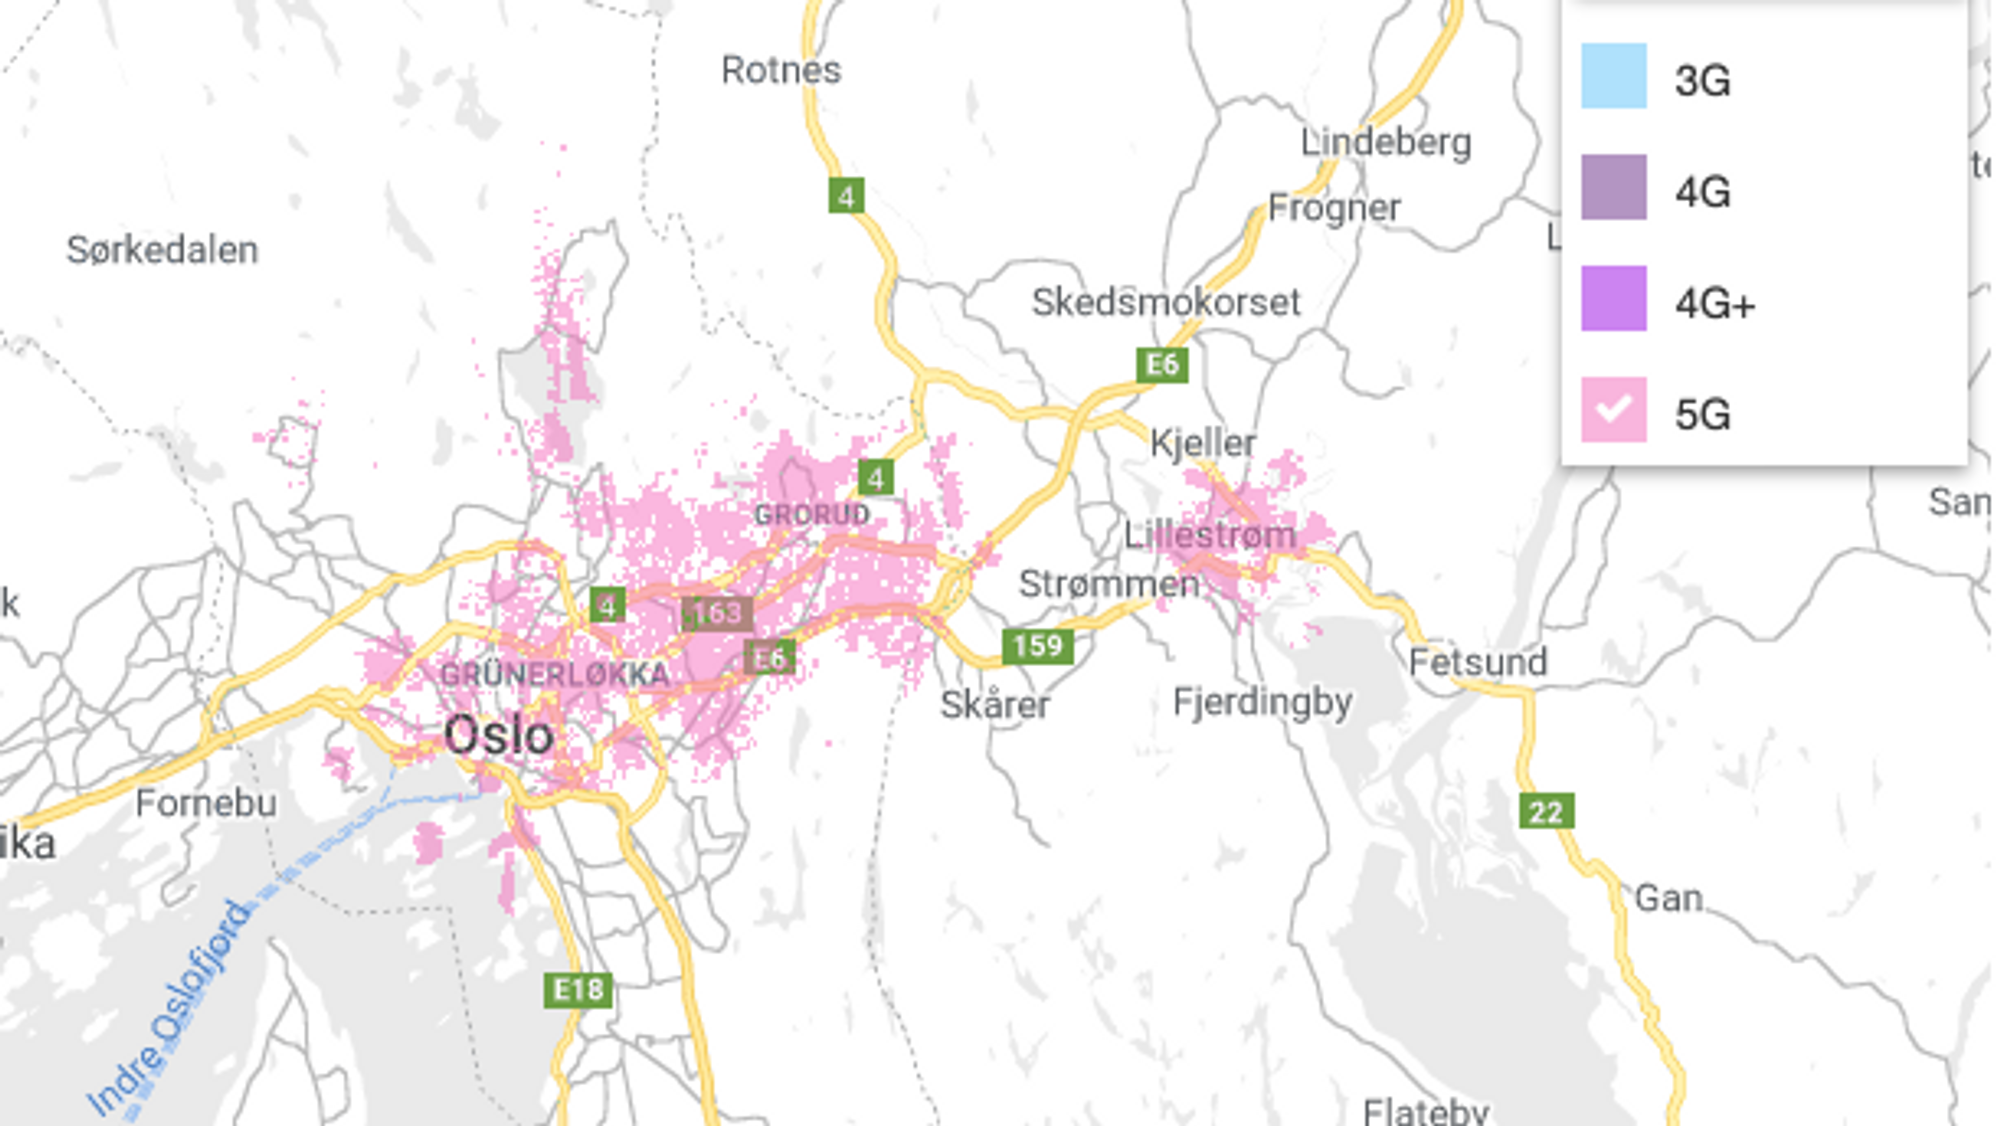 Telias dekningskart for Oslo og omegn. Her med bare 5G illustrert.